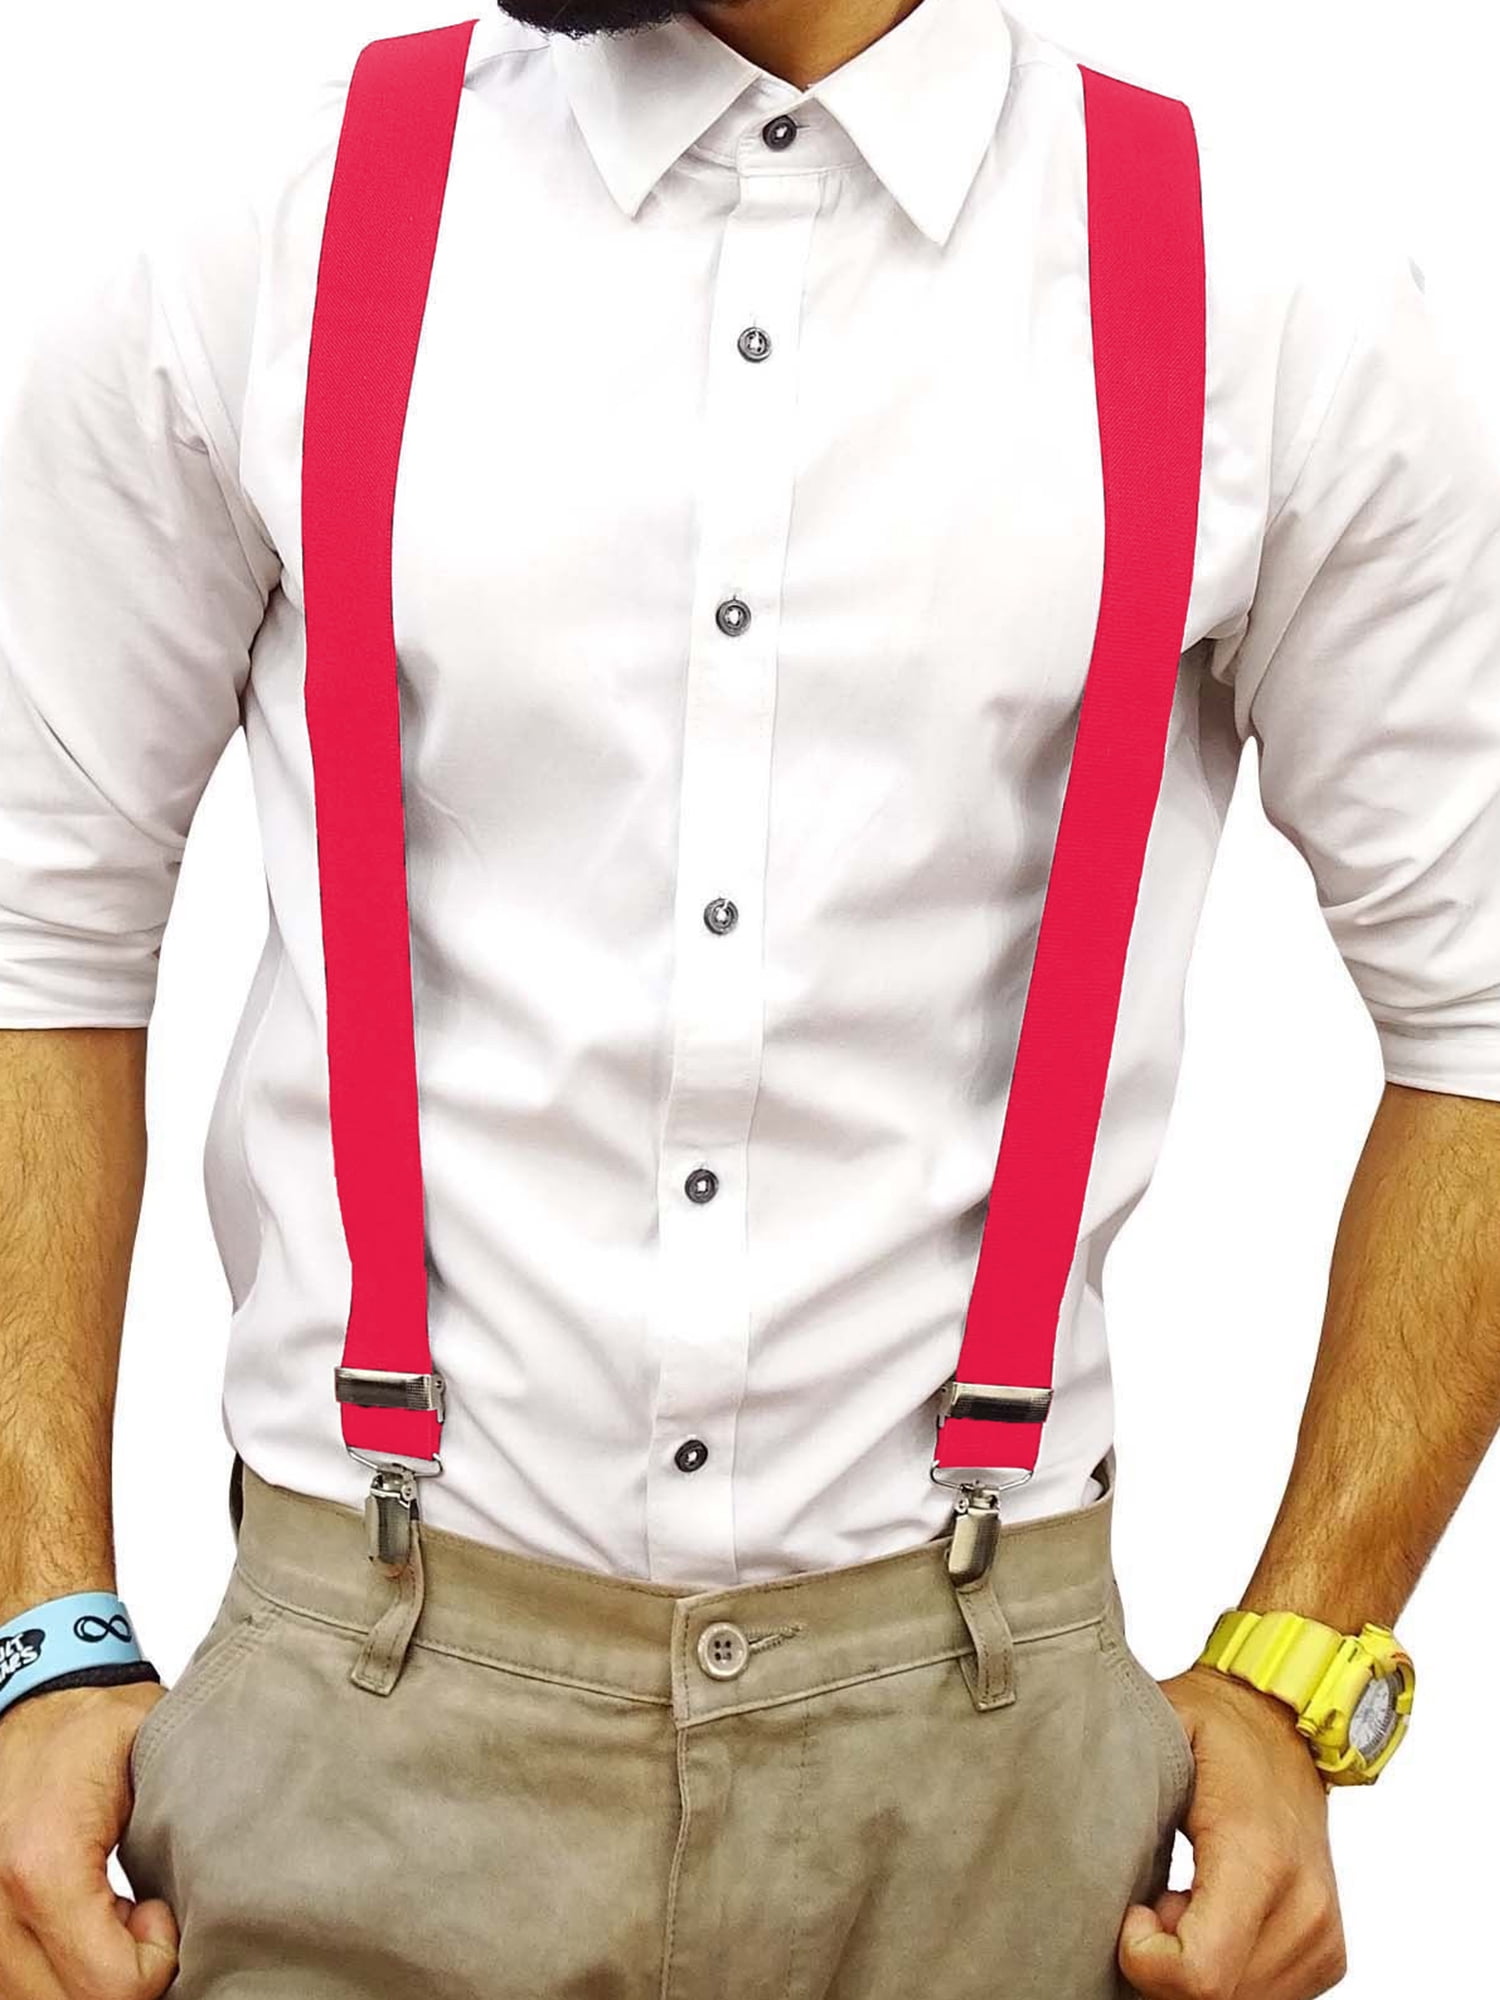 25mm Mens Braces Button Hole Adult Adjustable Elastic Trouser Y Shape Suspenders 